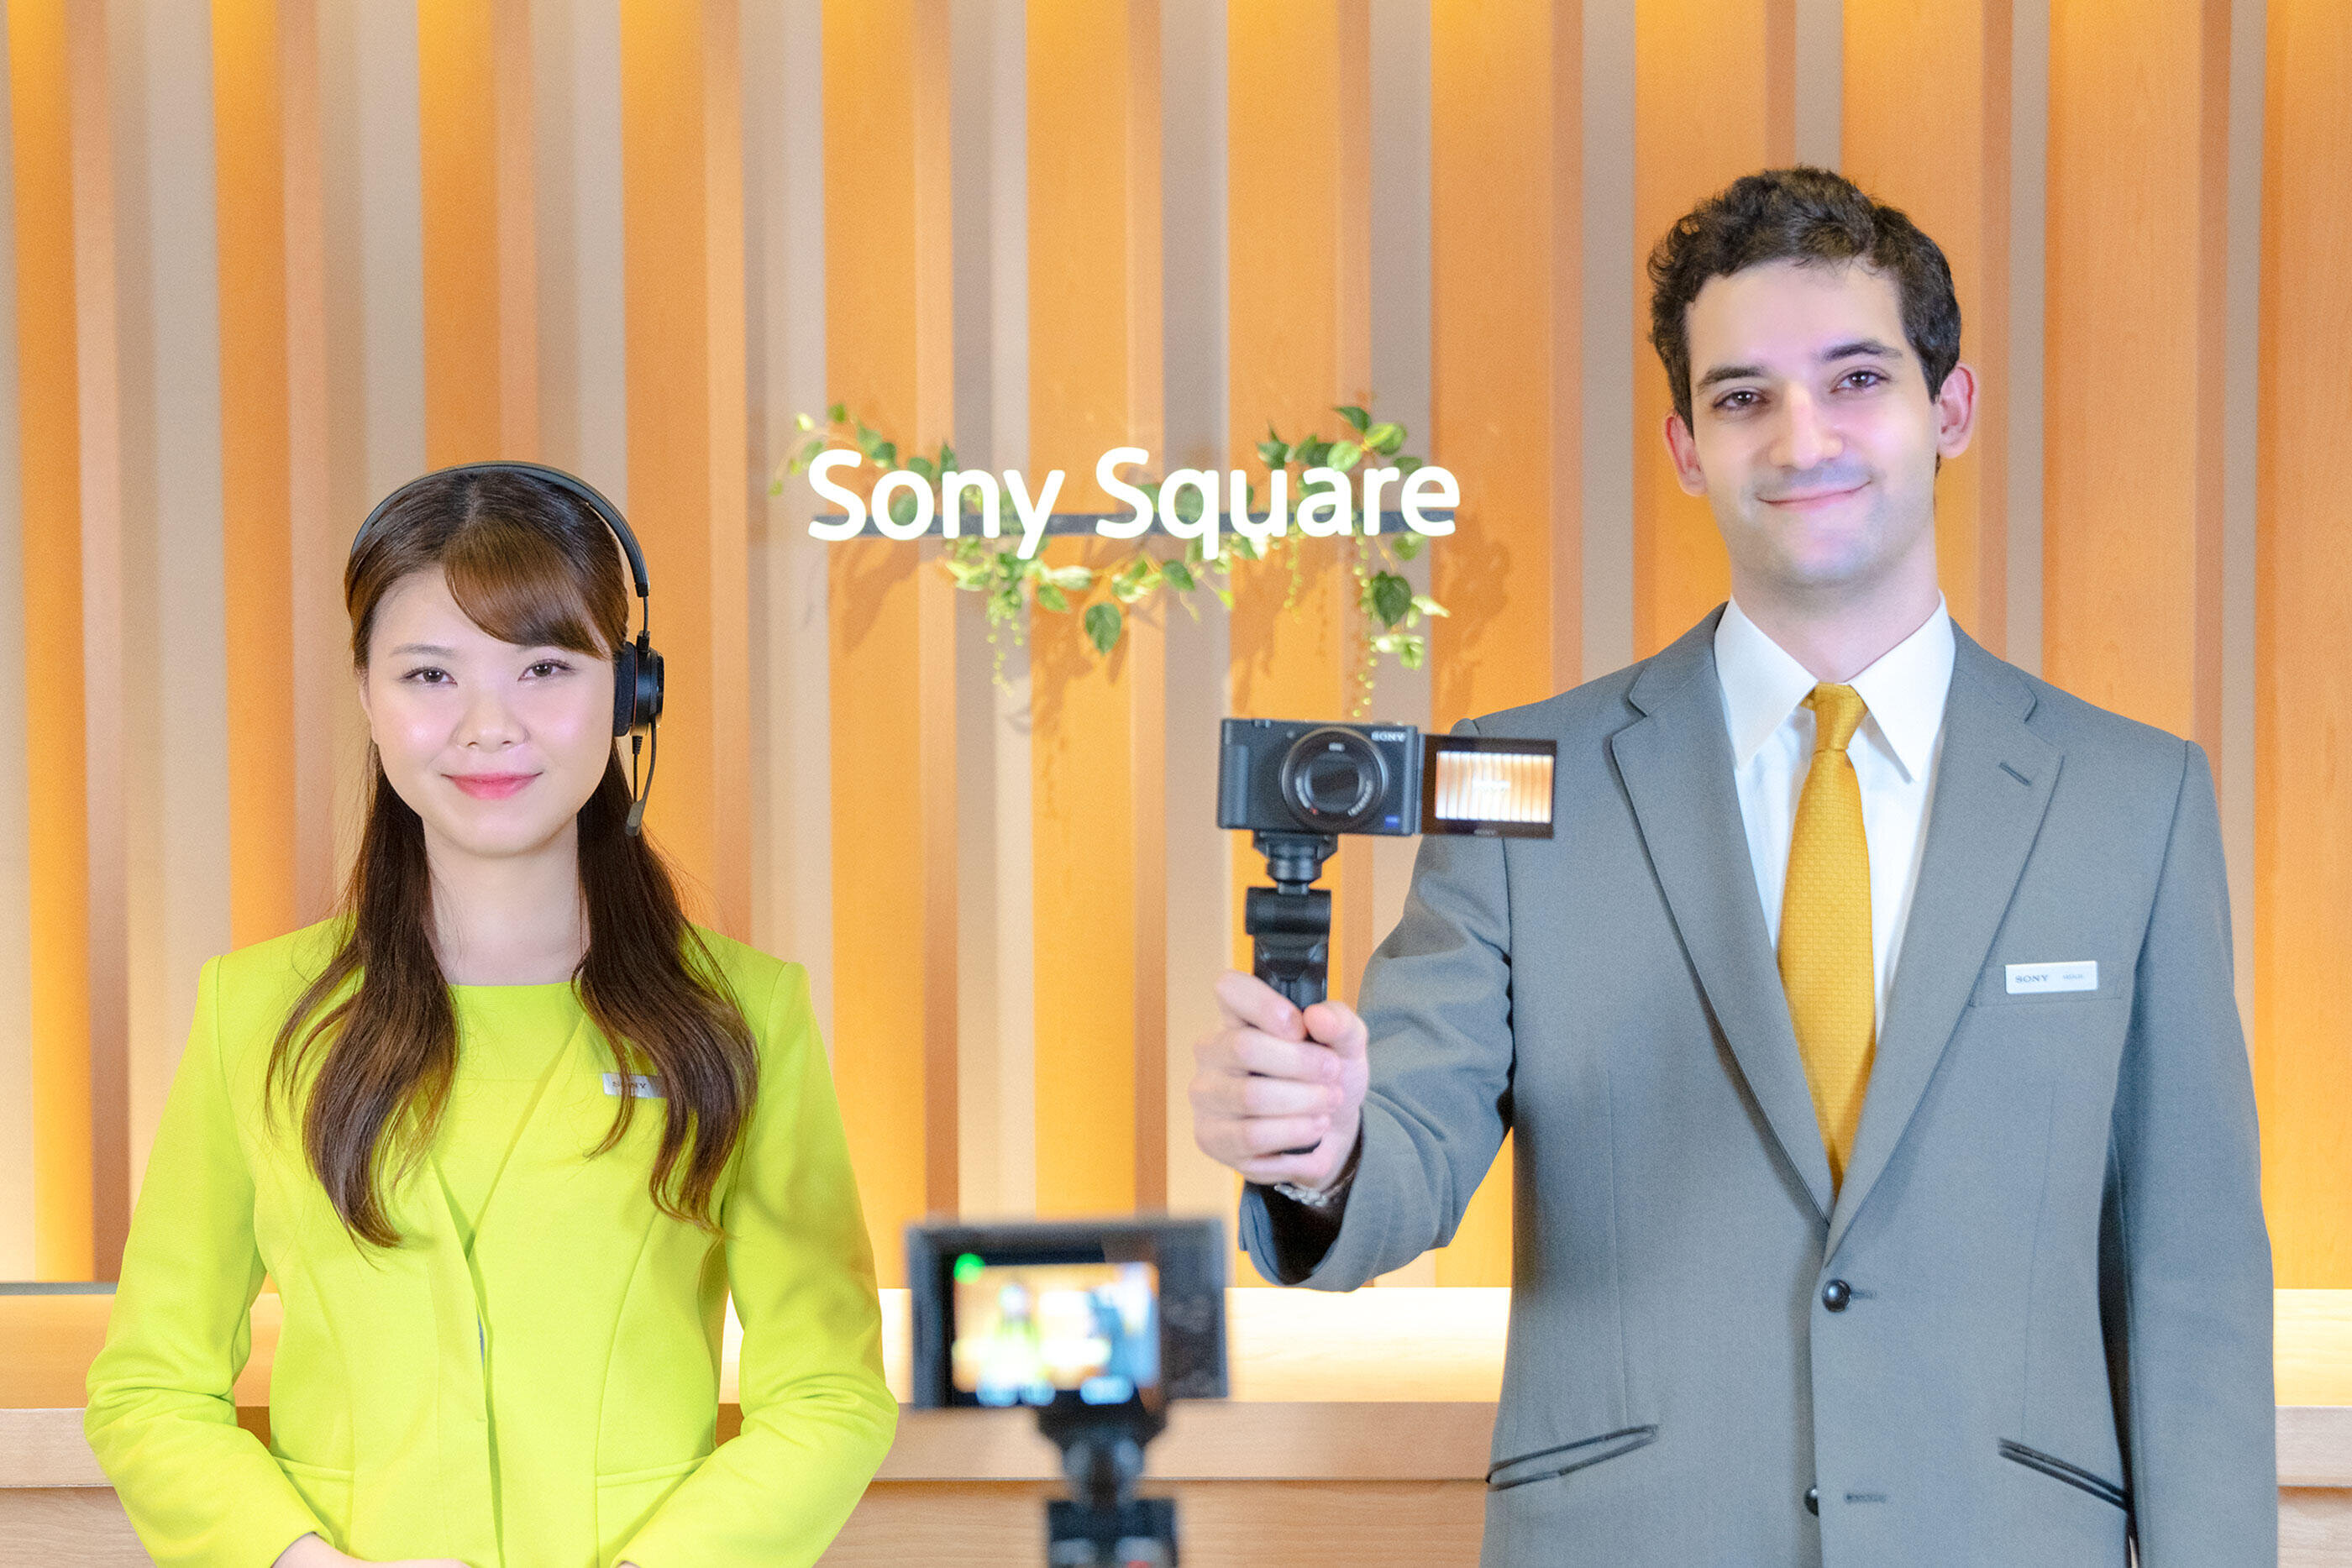 ソニーグループショールーム
Sony Square リモートツアー運営